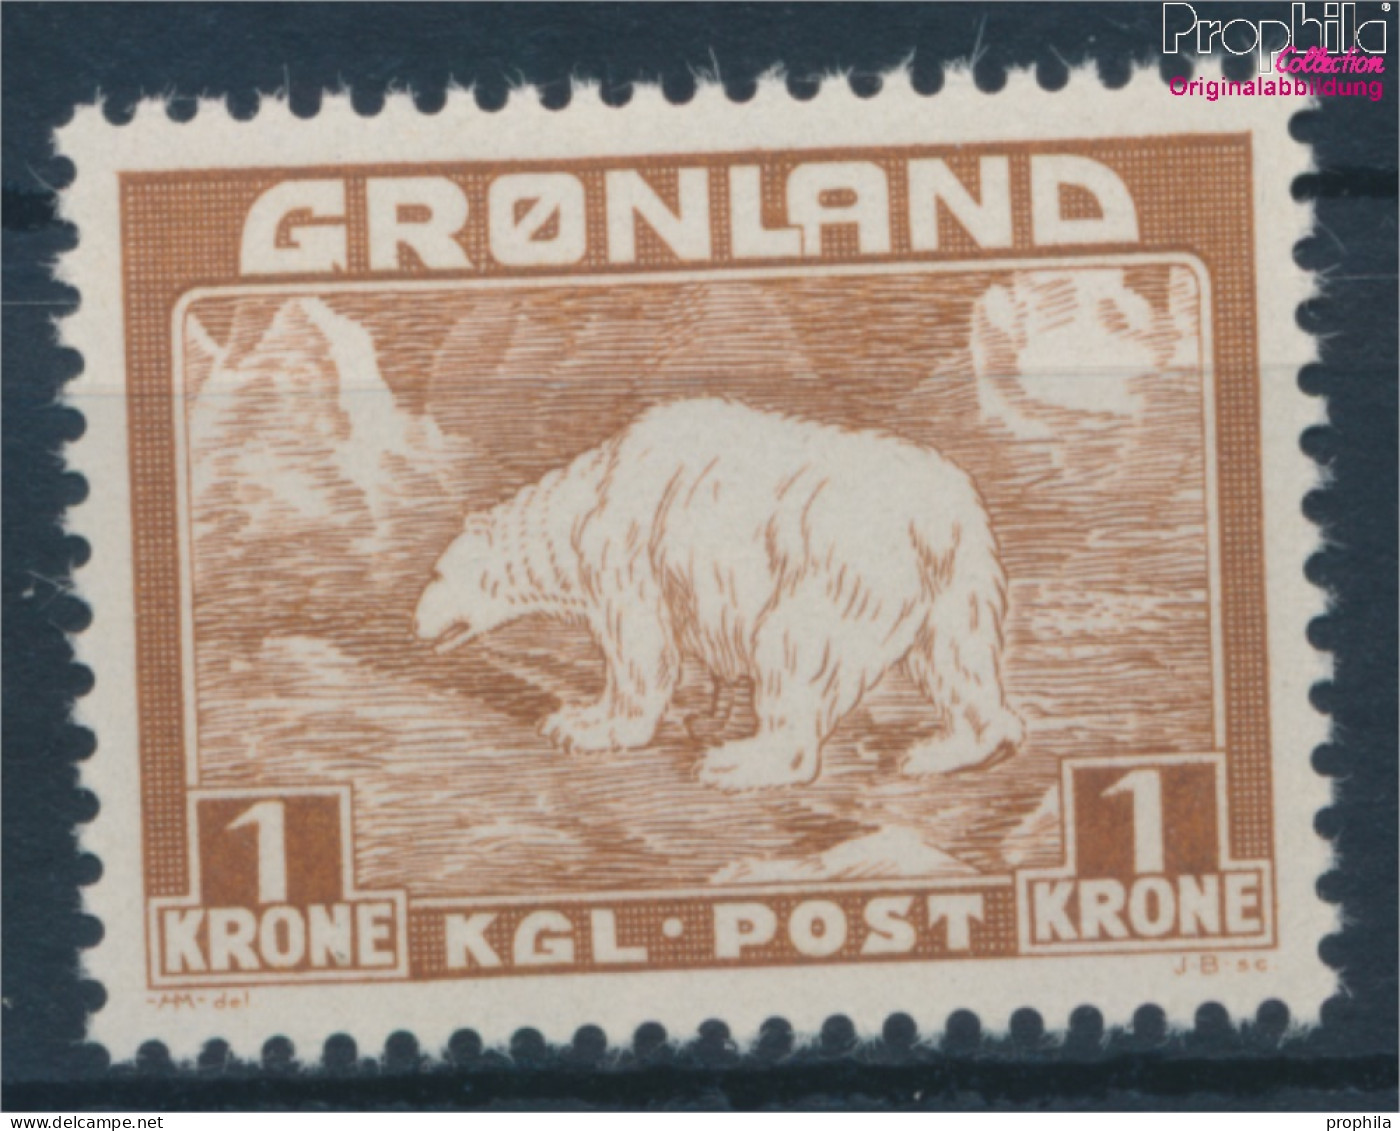 Dänemark - Grönland 7 Postfrisch 1938 Eisbär (10176788 - Ungebraucht